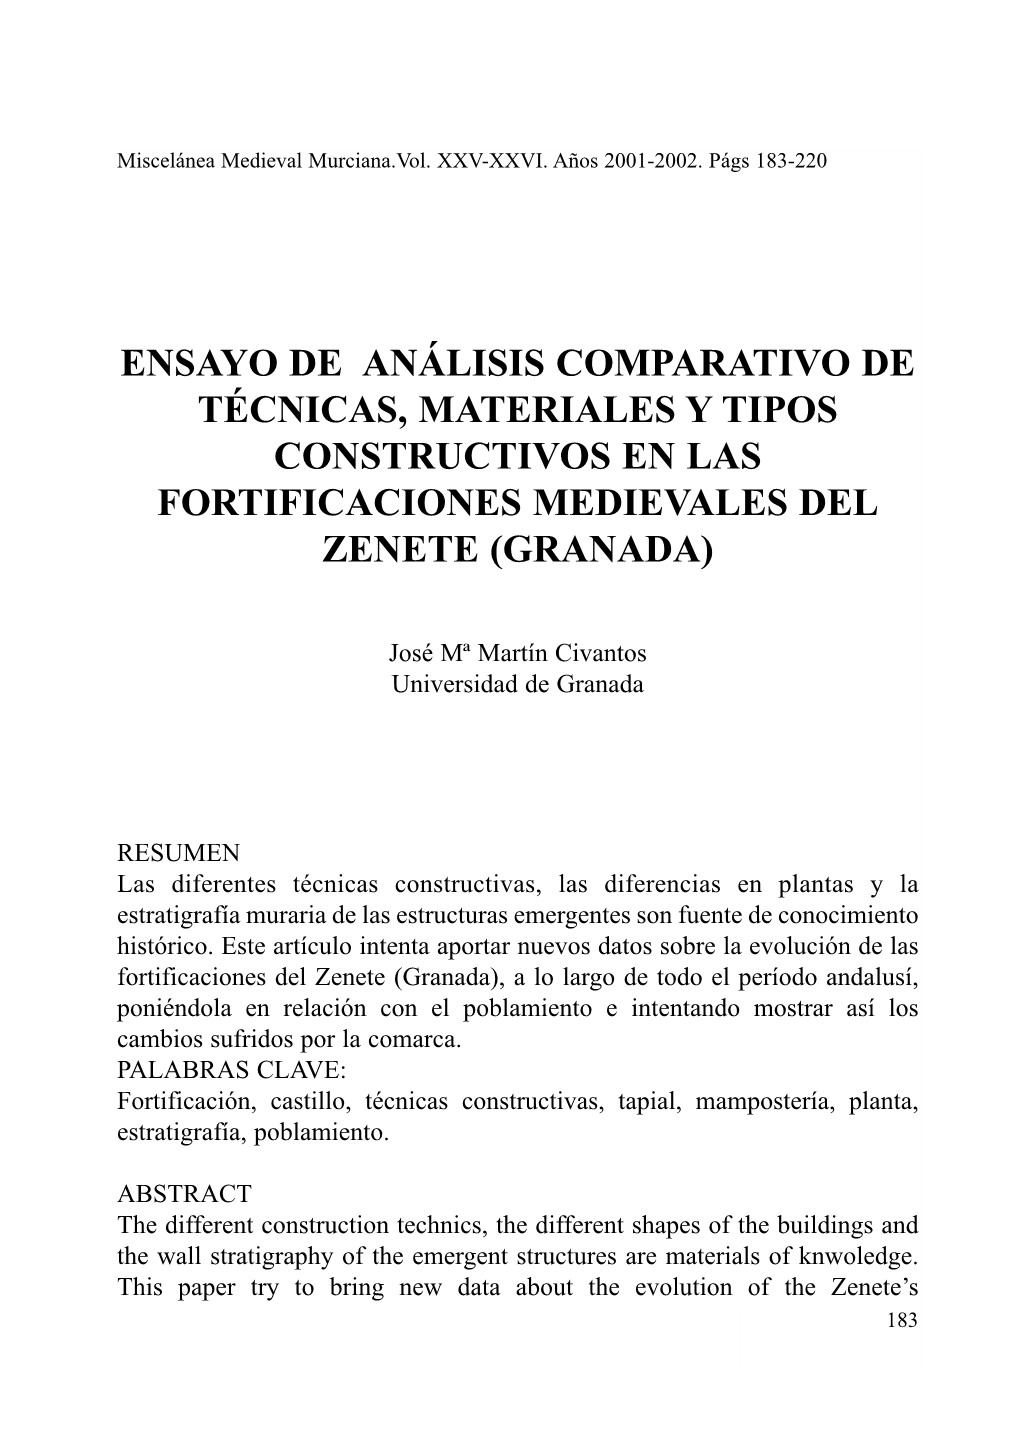 Ensayo De Análisis Comparativo De Técnicas, Materiales Y Tipos Constructivos En Las Fortificaciones Medievales Del Zenete (Granada)